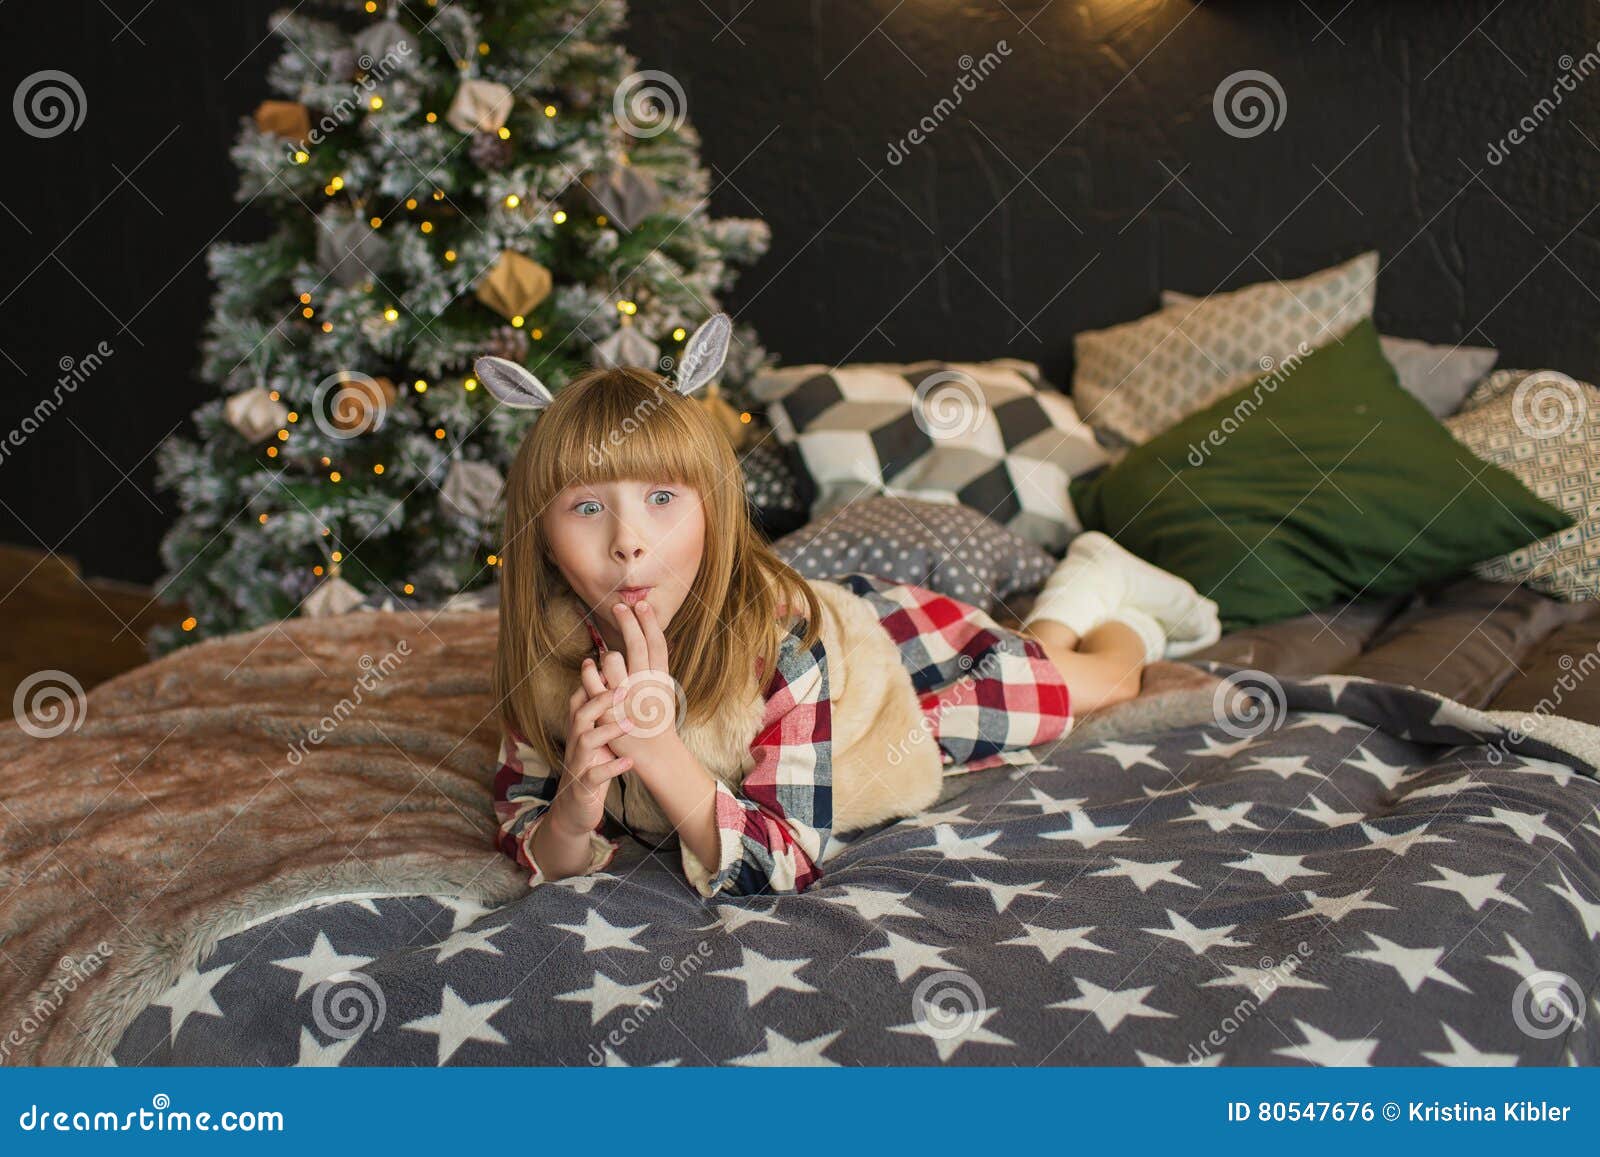 Смешная маленькая девочка лежит на кровати во времени рождества .